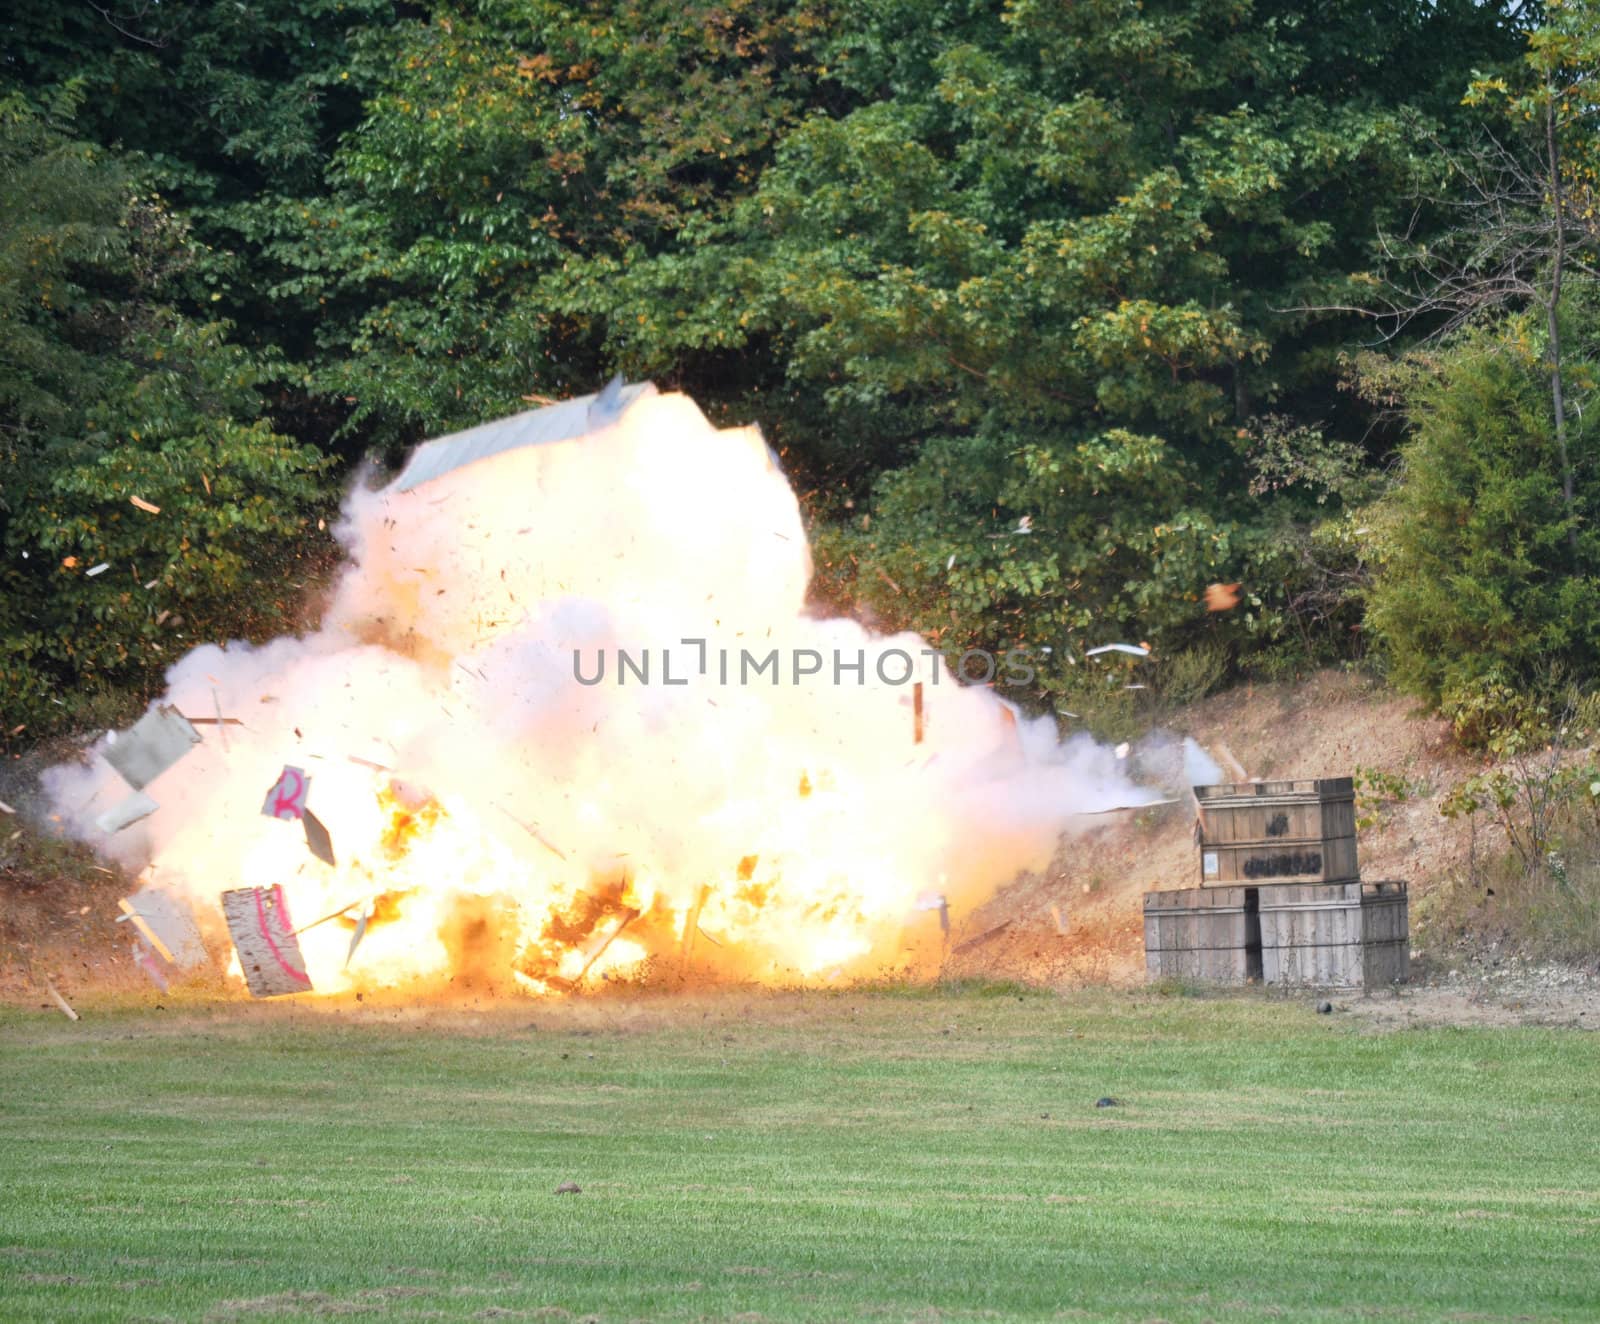 Civil War Re-enactment - explosion by RefocusPhoto